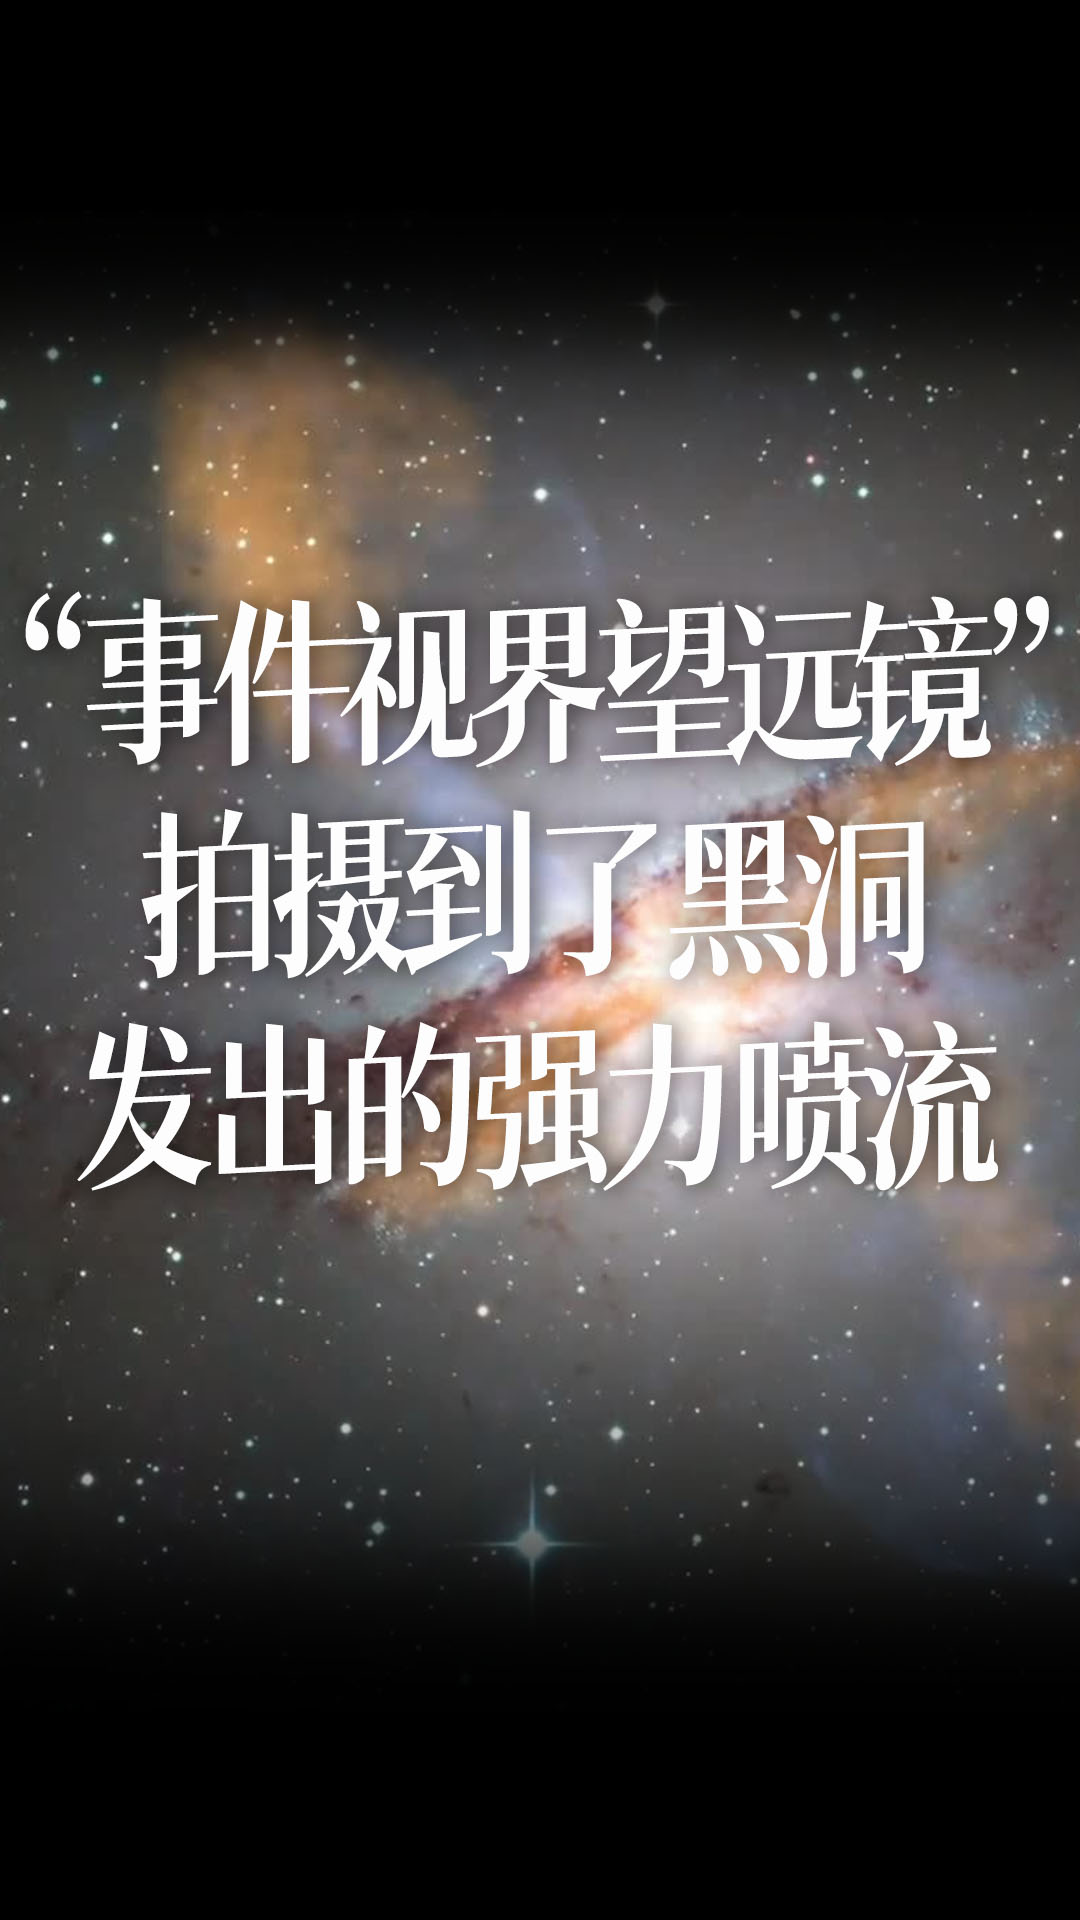 【中文】“事件视界望远镜”拍摄到了黑洞发出的强力喷流